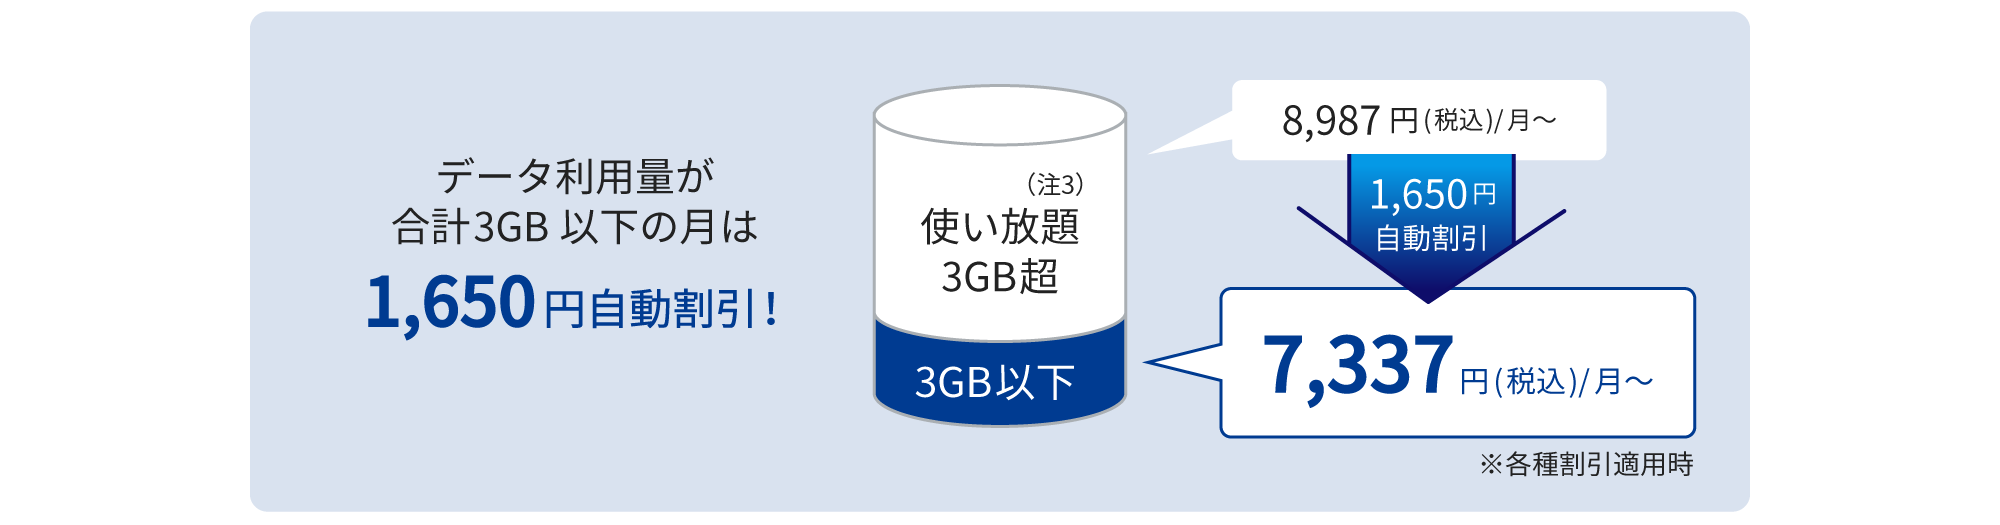 データ利用量が3GB以下の月は1,650円自動割引され、7,337円(税込)/月に！